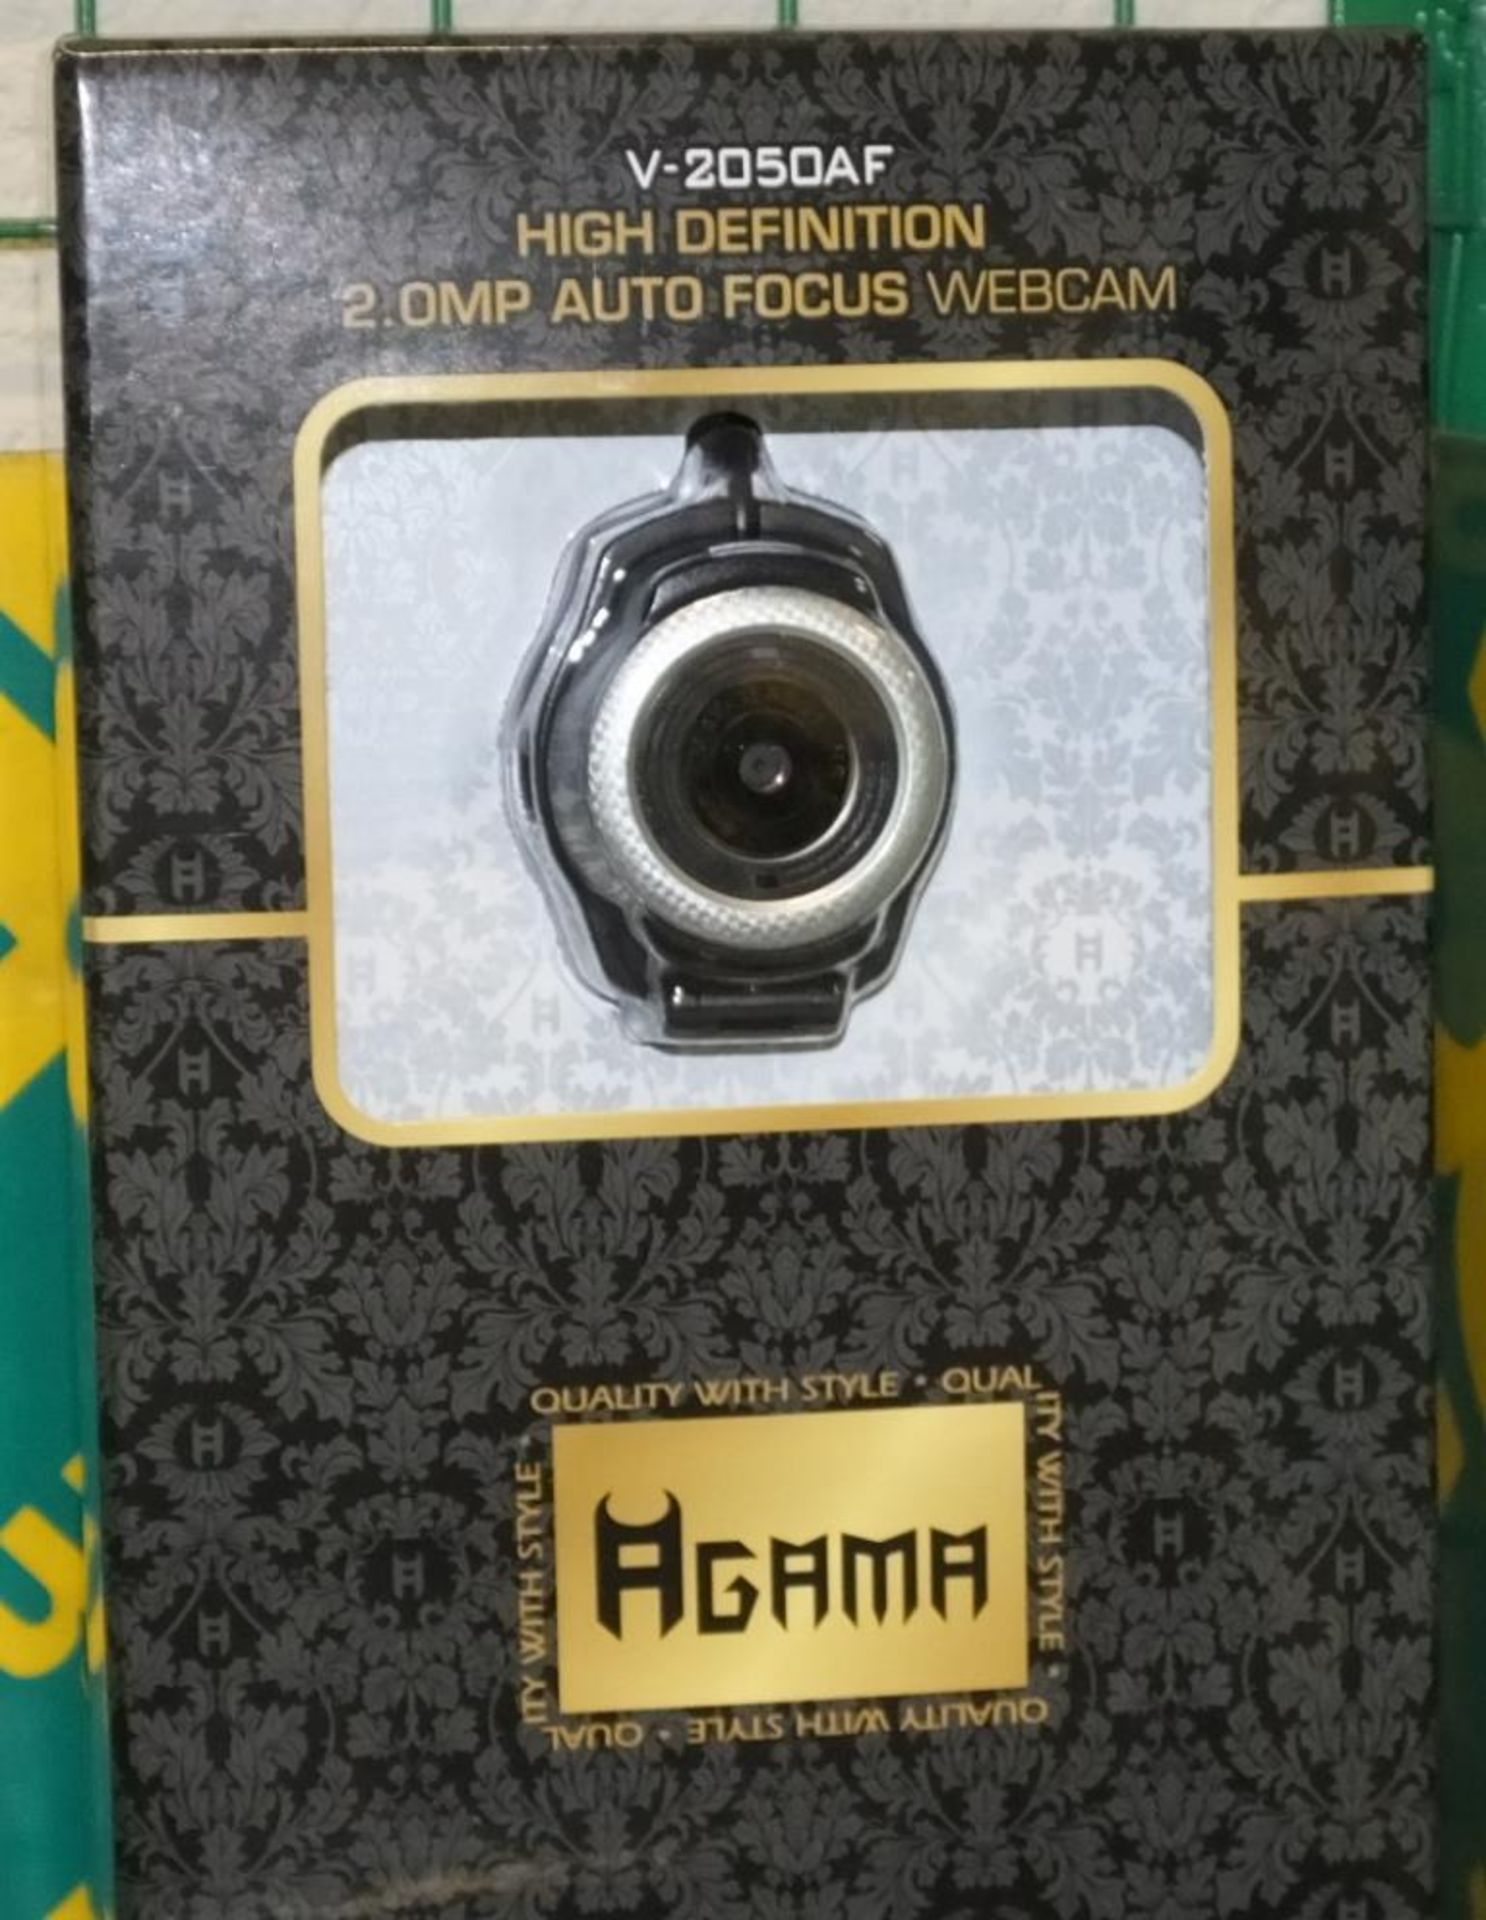 3x V-2050AF High Definition 2.OMP Auto Focus Webcams - Image 2 of 2